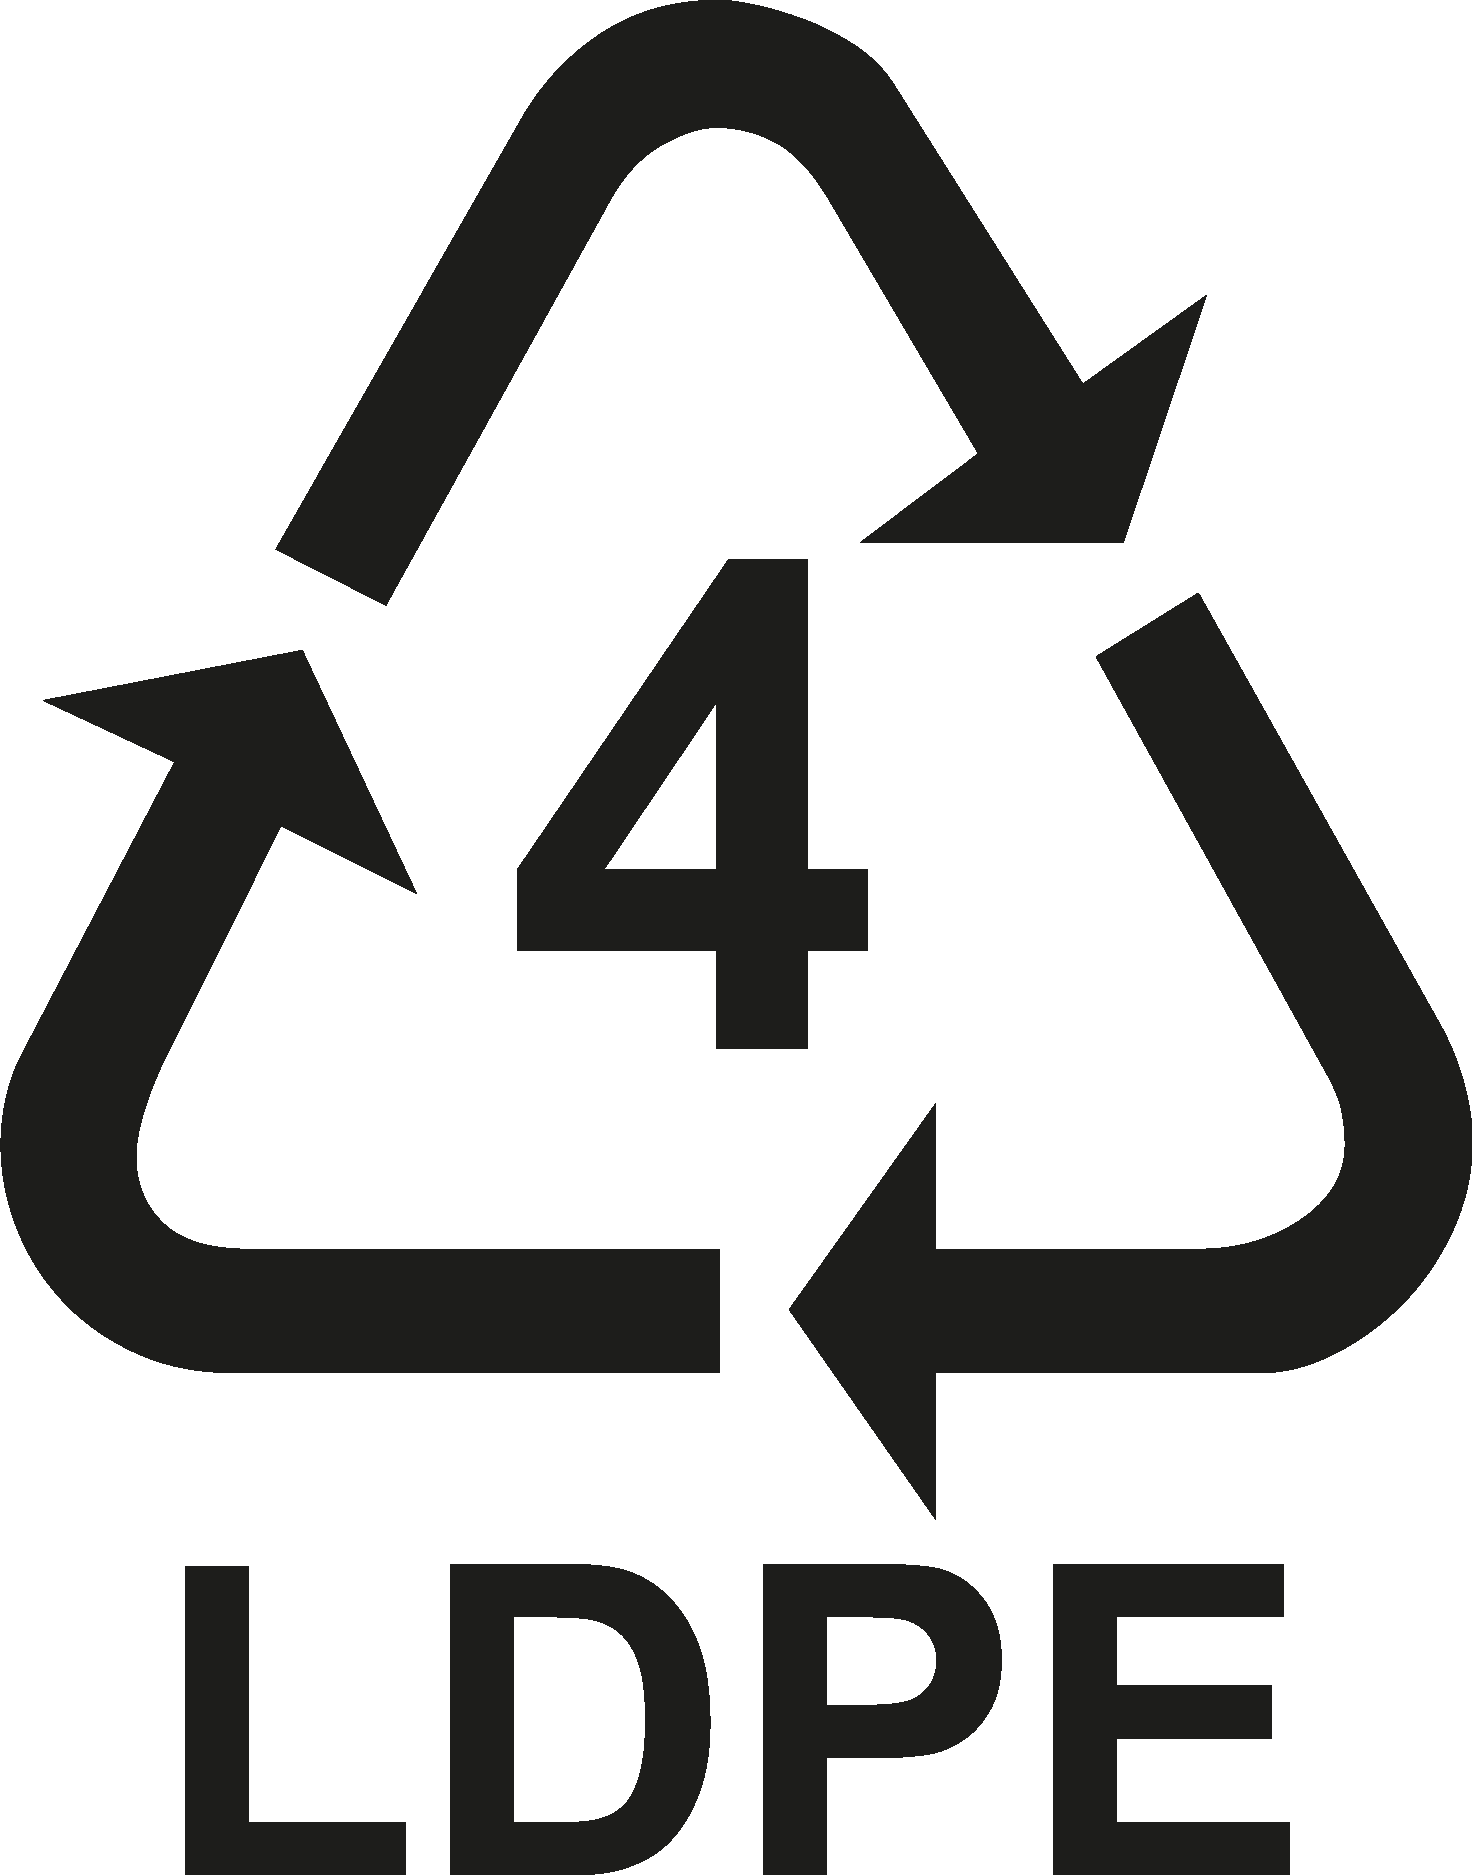 Петля Мебиуса 04 LDPE. Знак петля Мебиуса 04 LDPE. Маркировка 4 LDPE. LDPE 4 значок.